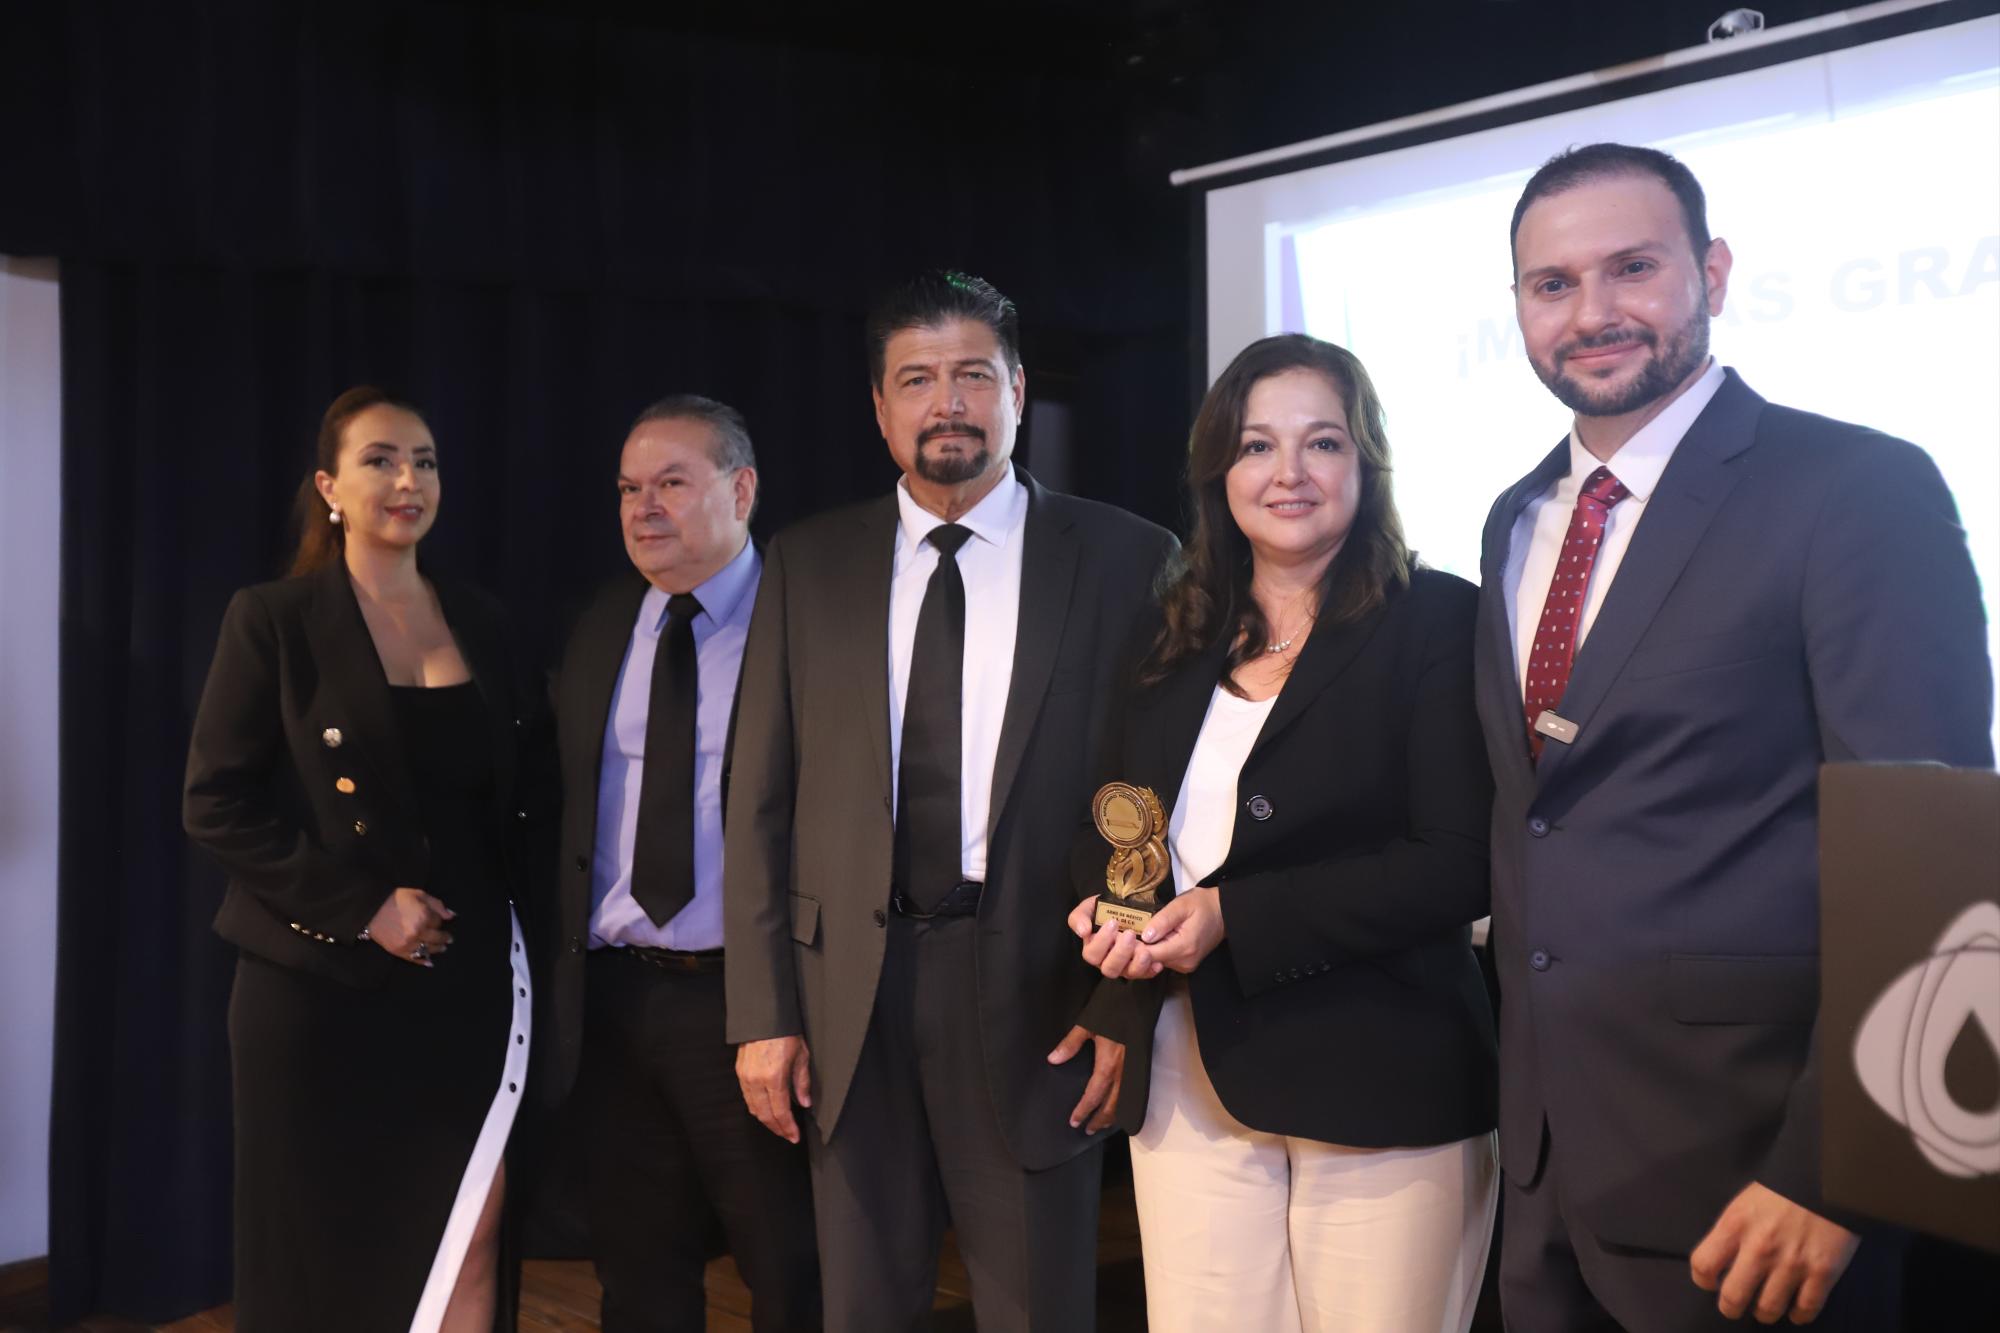 $!Martín Mancilla y Gabriela Herrera, de la empresa ARMS, reciben reconocimiento de manos de Eugenia Olagues, José Manuel Lerma y Cuauhtémoc Llanes.